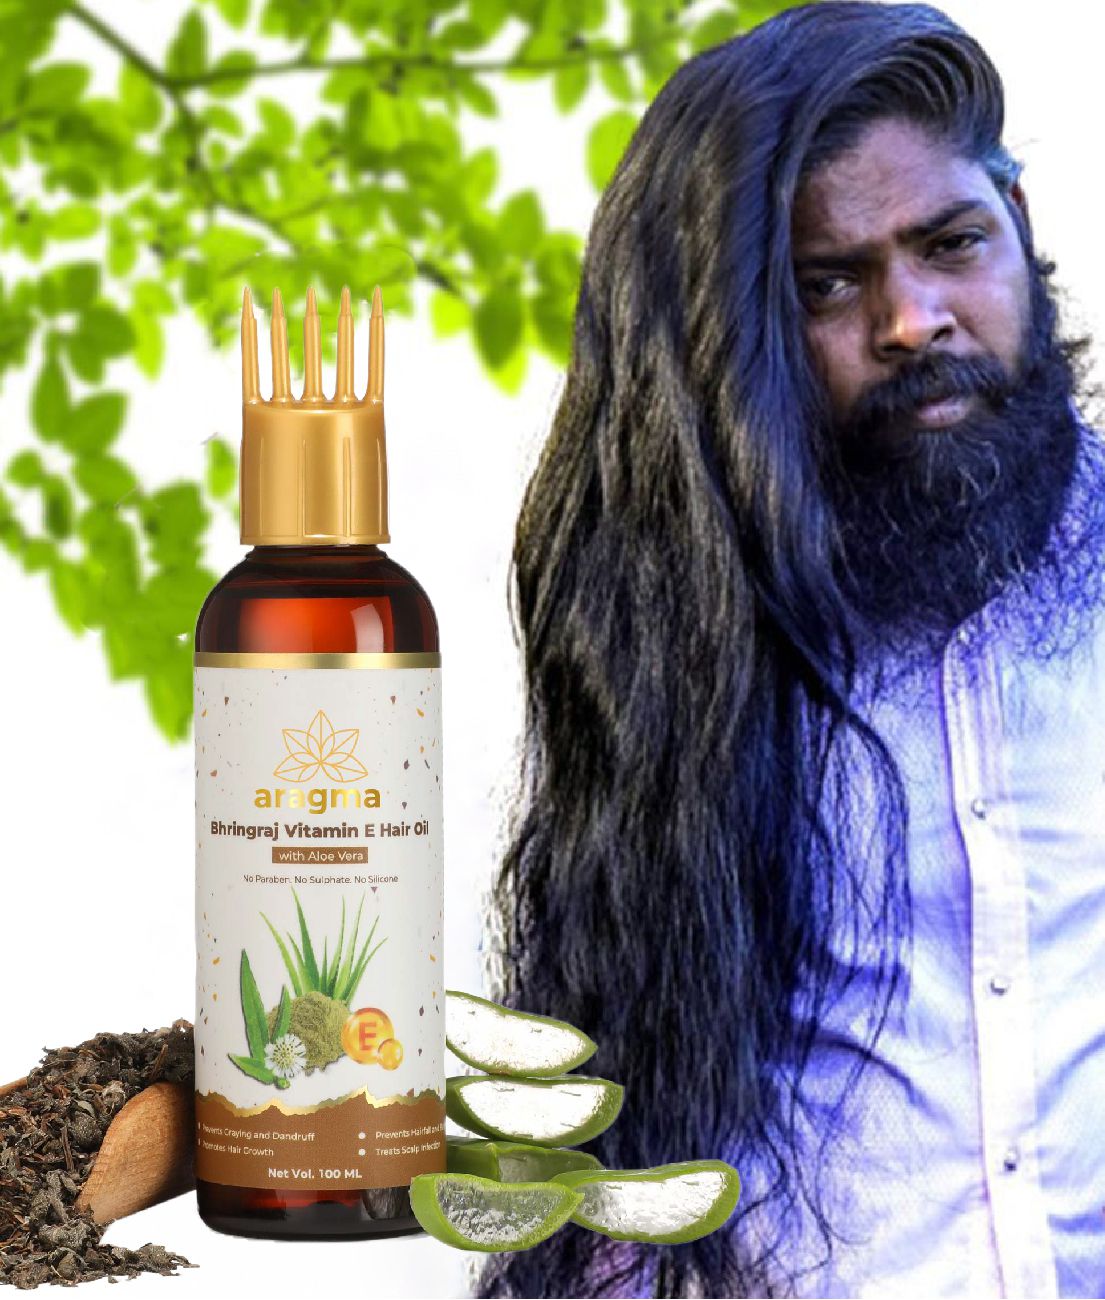 Aragma Anti Hair Fall Vitamin E Hair Oil - Herbal product, 100 ml: Buy  Aragma Anti Hair Fall Vitamin E Hair Oil - Herbal product, 100 ml at Best  Prices in India - Snapdeal